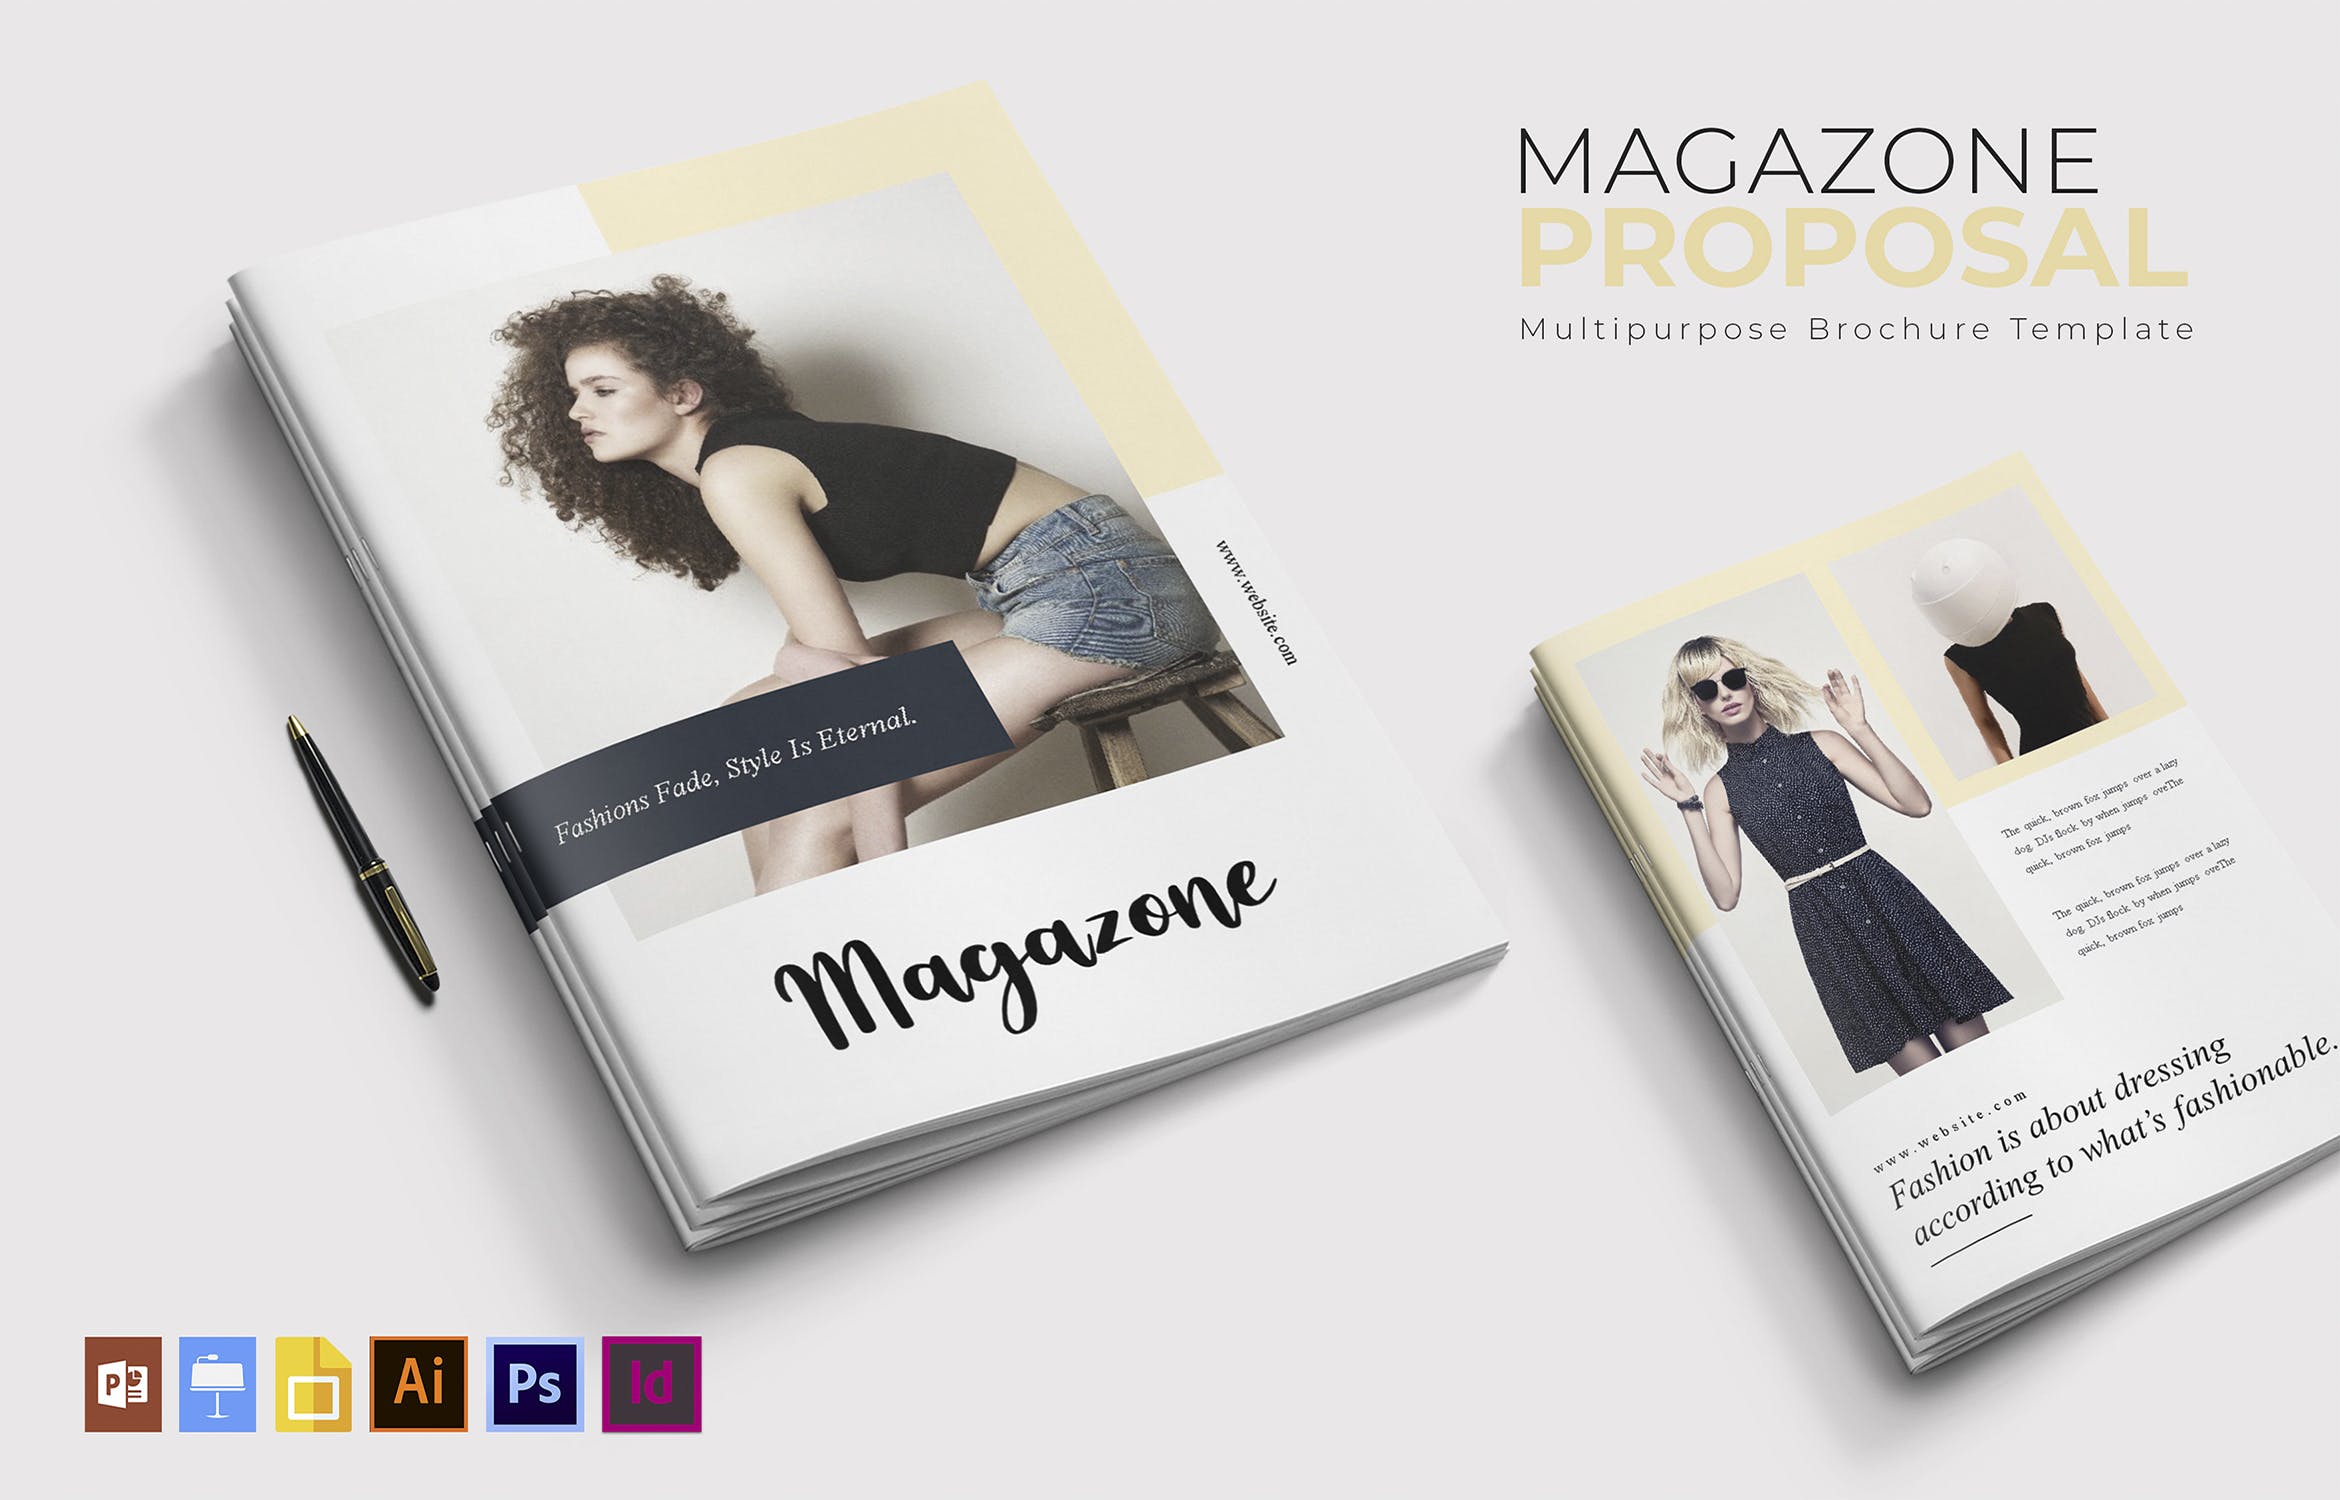 时尚品牌宣传画册/16图库精选杂志排版设计模板 Magazone | Brochure插图(2)